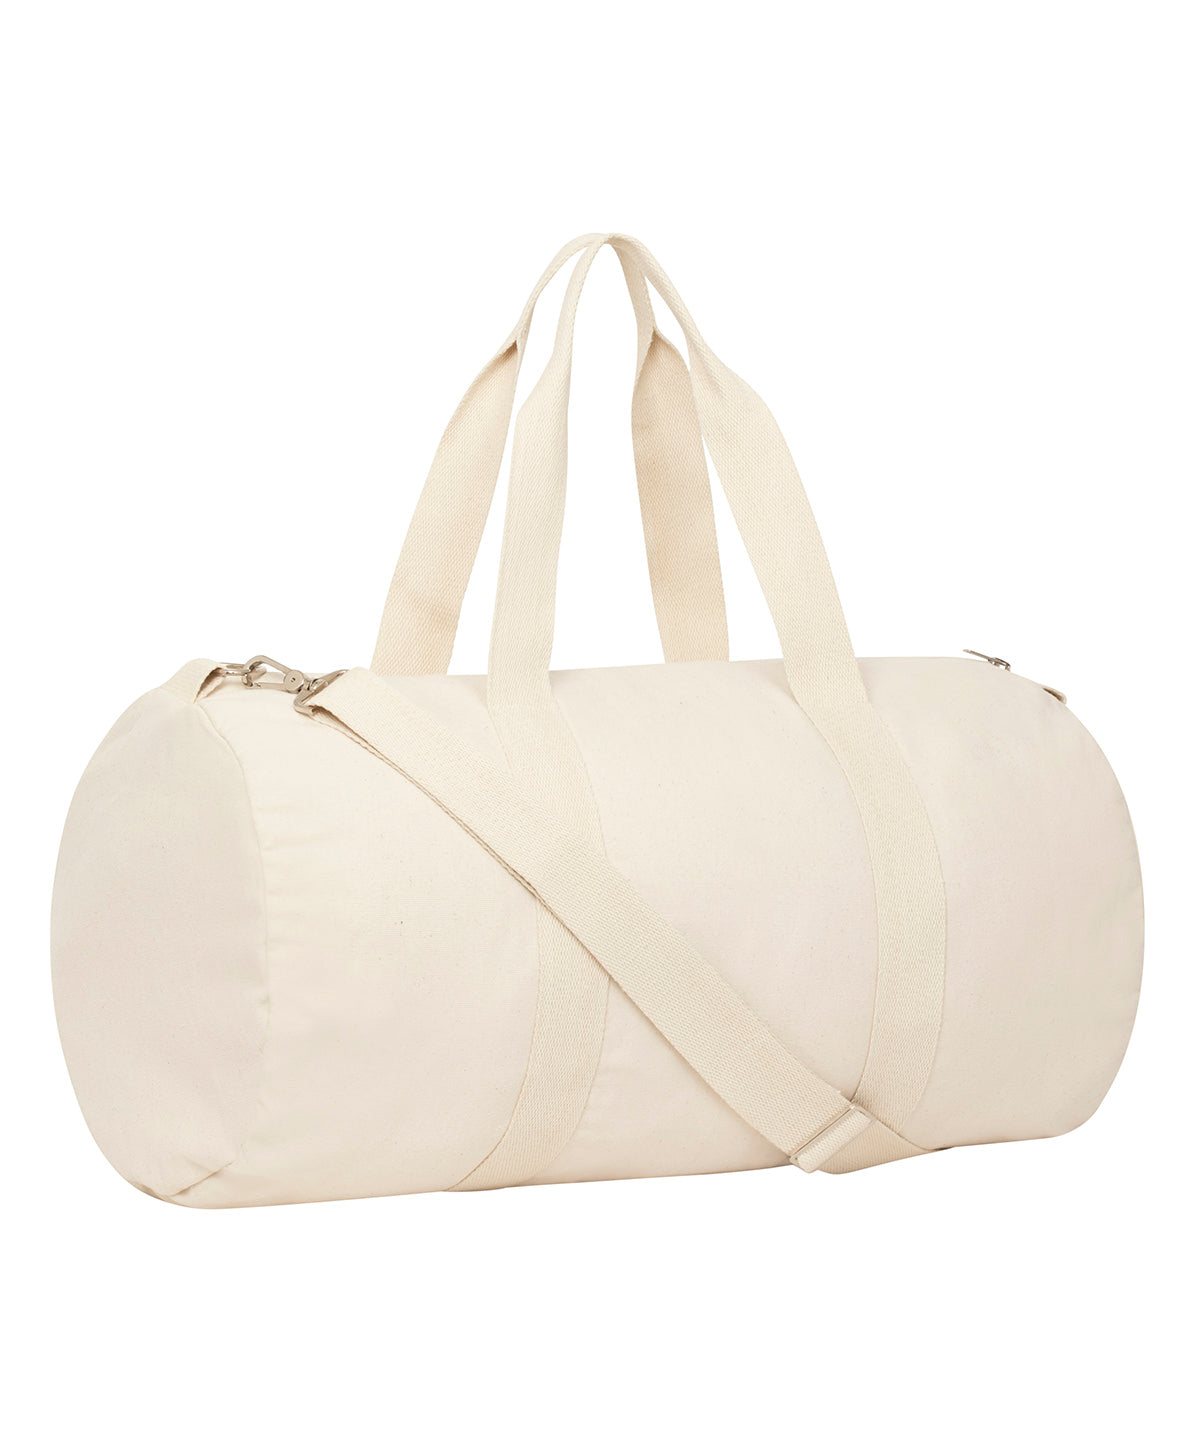 Töskur - Duffle Bag With Canvas Fabric (STAU892)